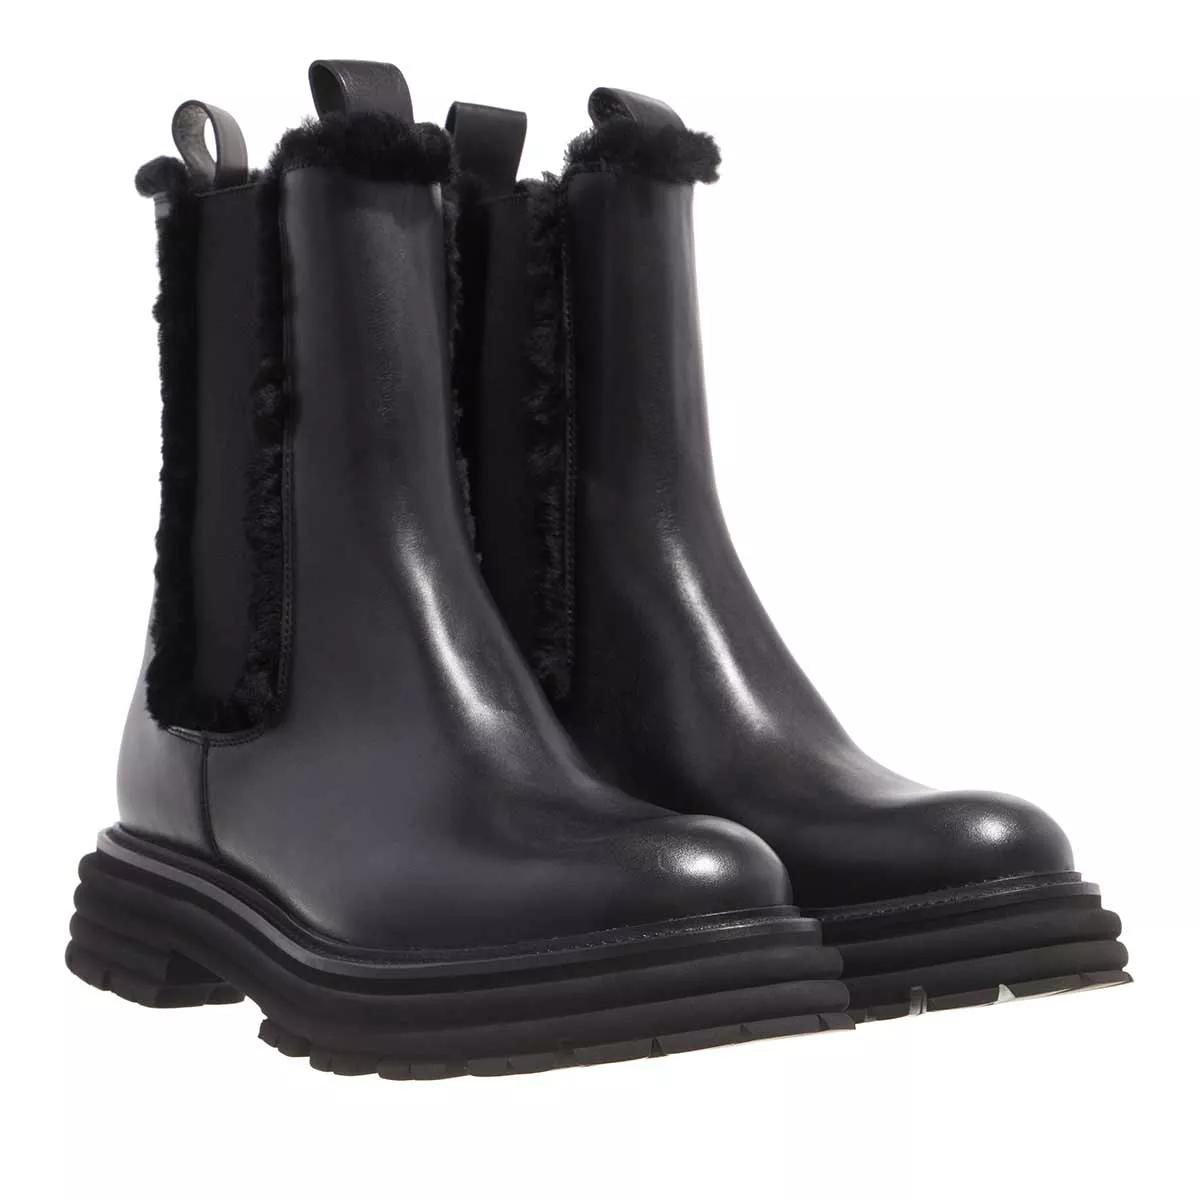 Kennel & Schmenger Boots & Stiefeletten - Master Boots Leather - Gr. 36 (EU) - in Schwarz - für Damen von Kennel & Schmenger